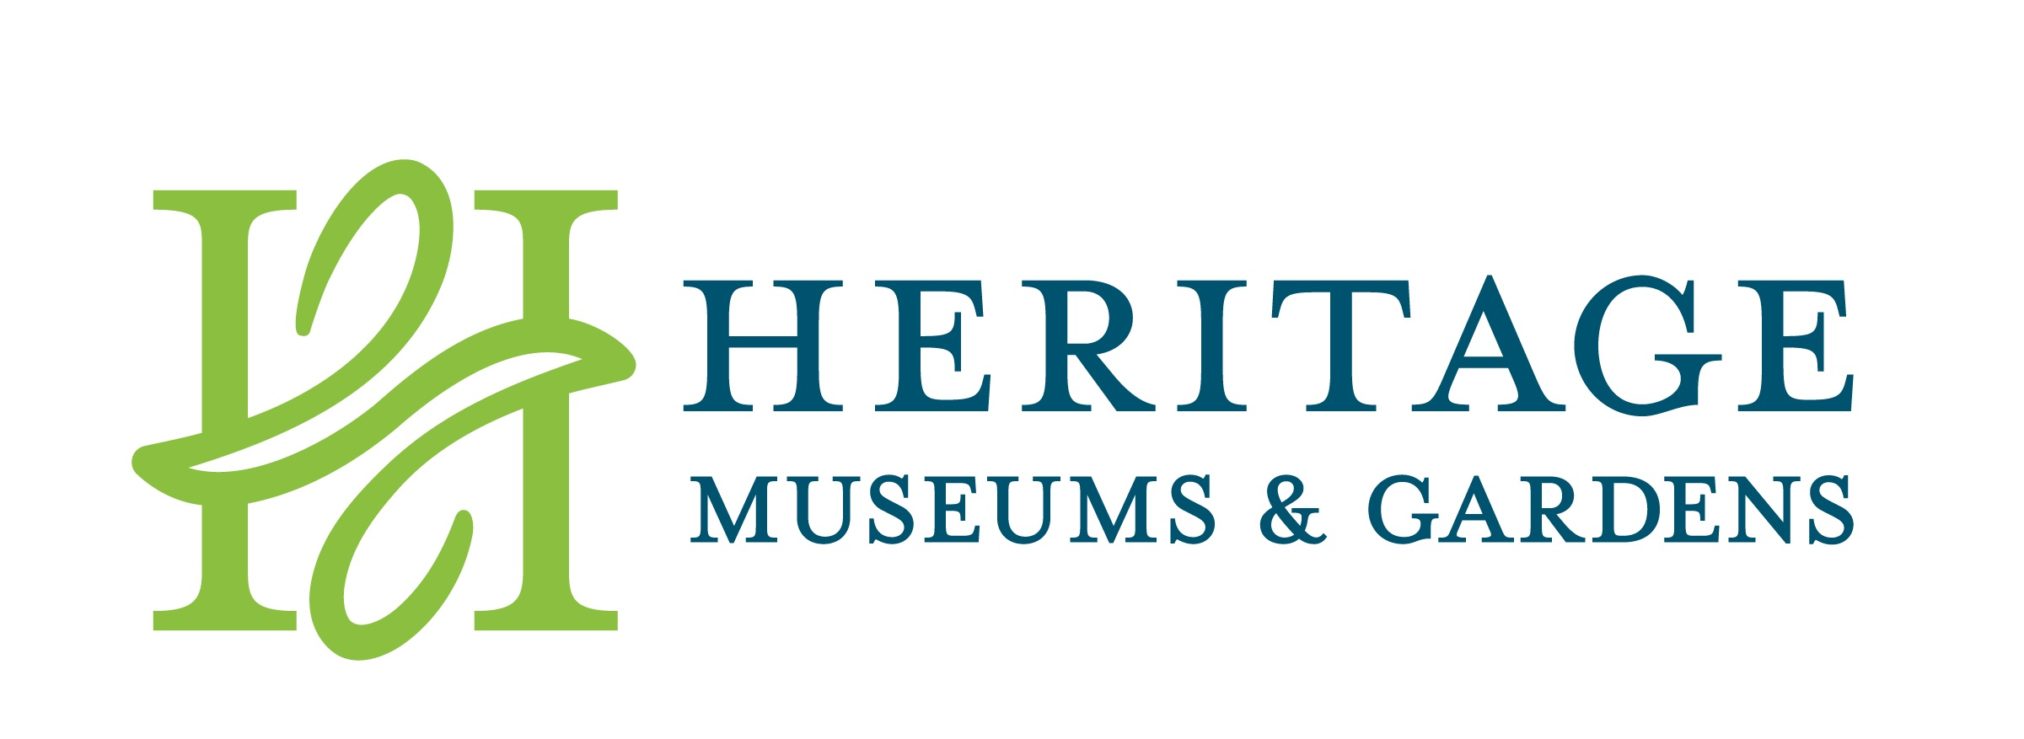 Heritage new logo